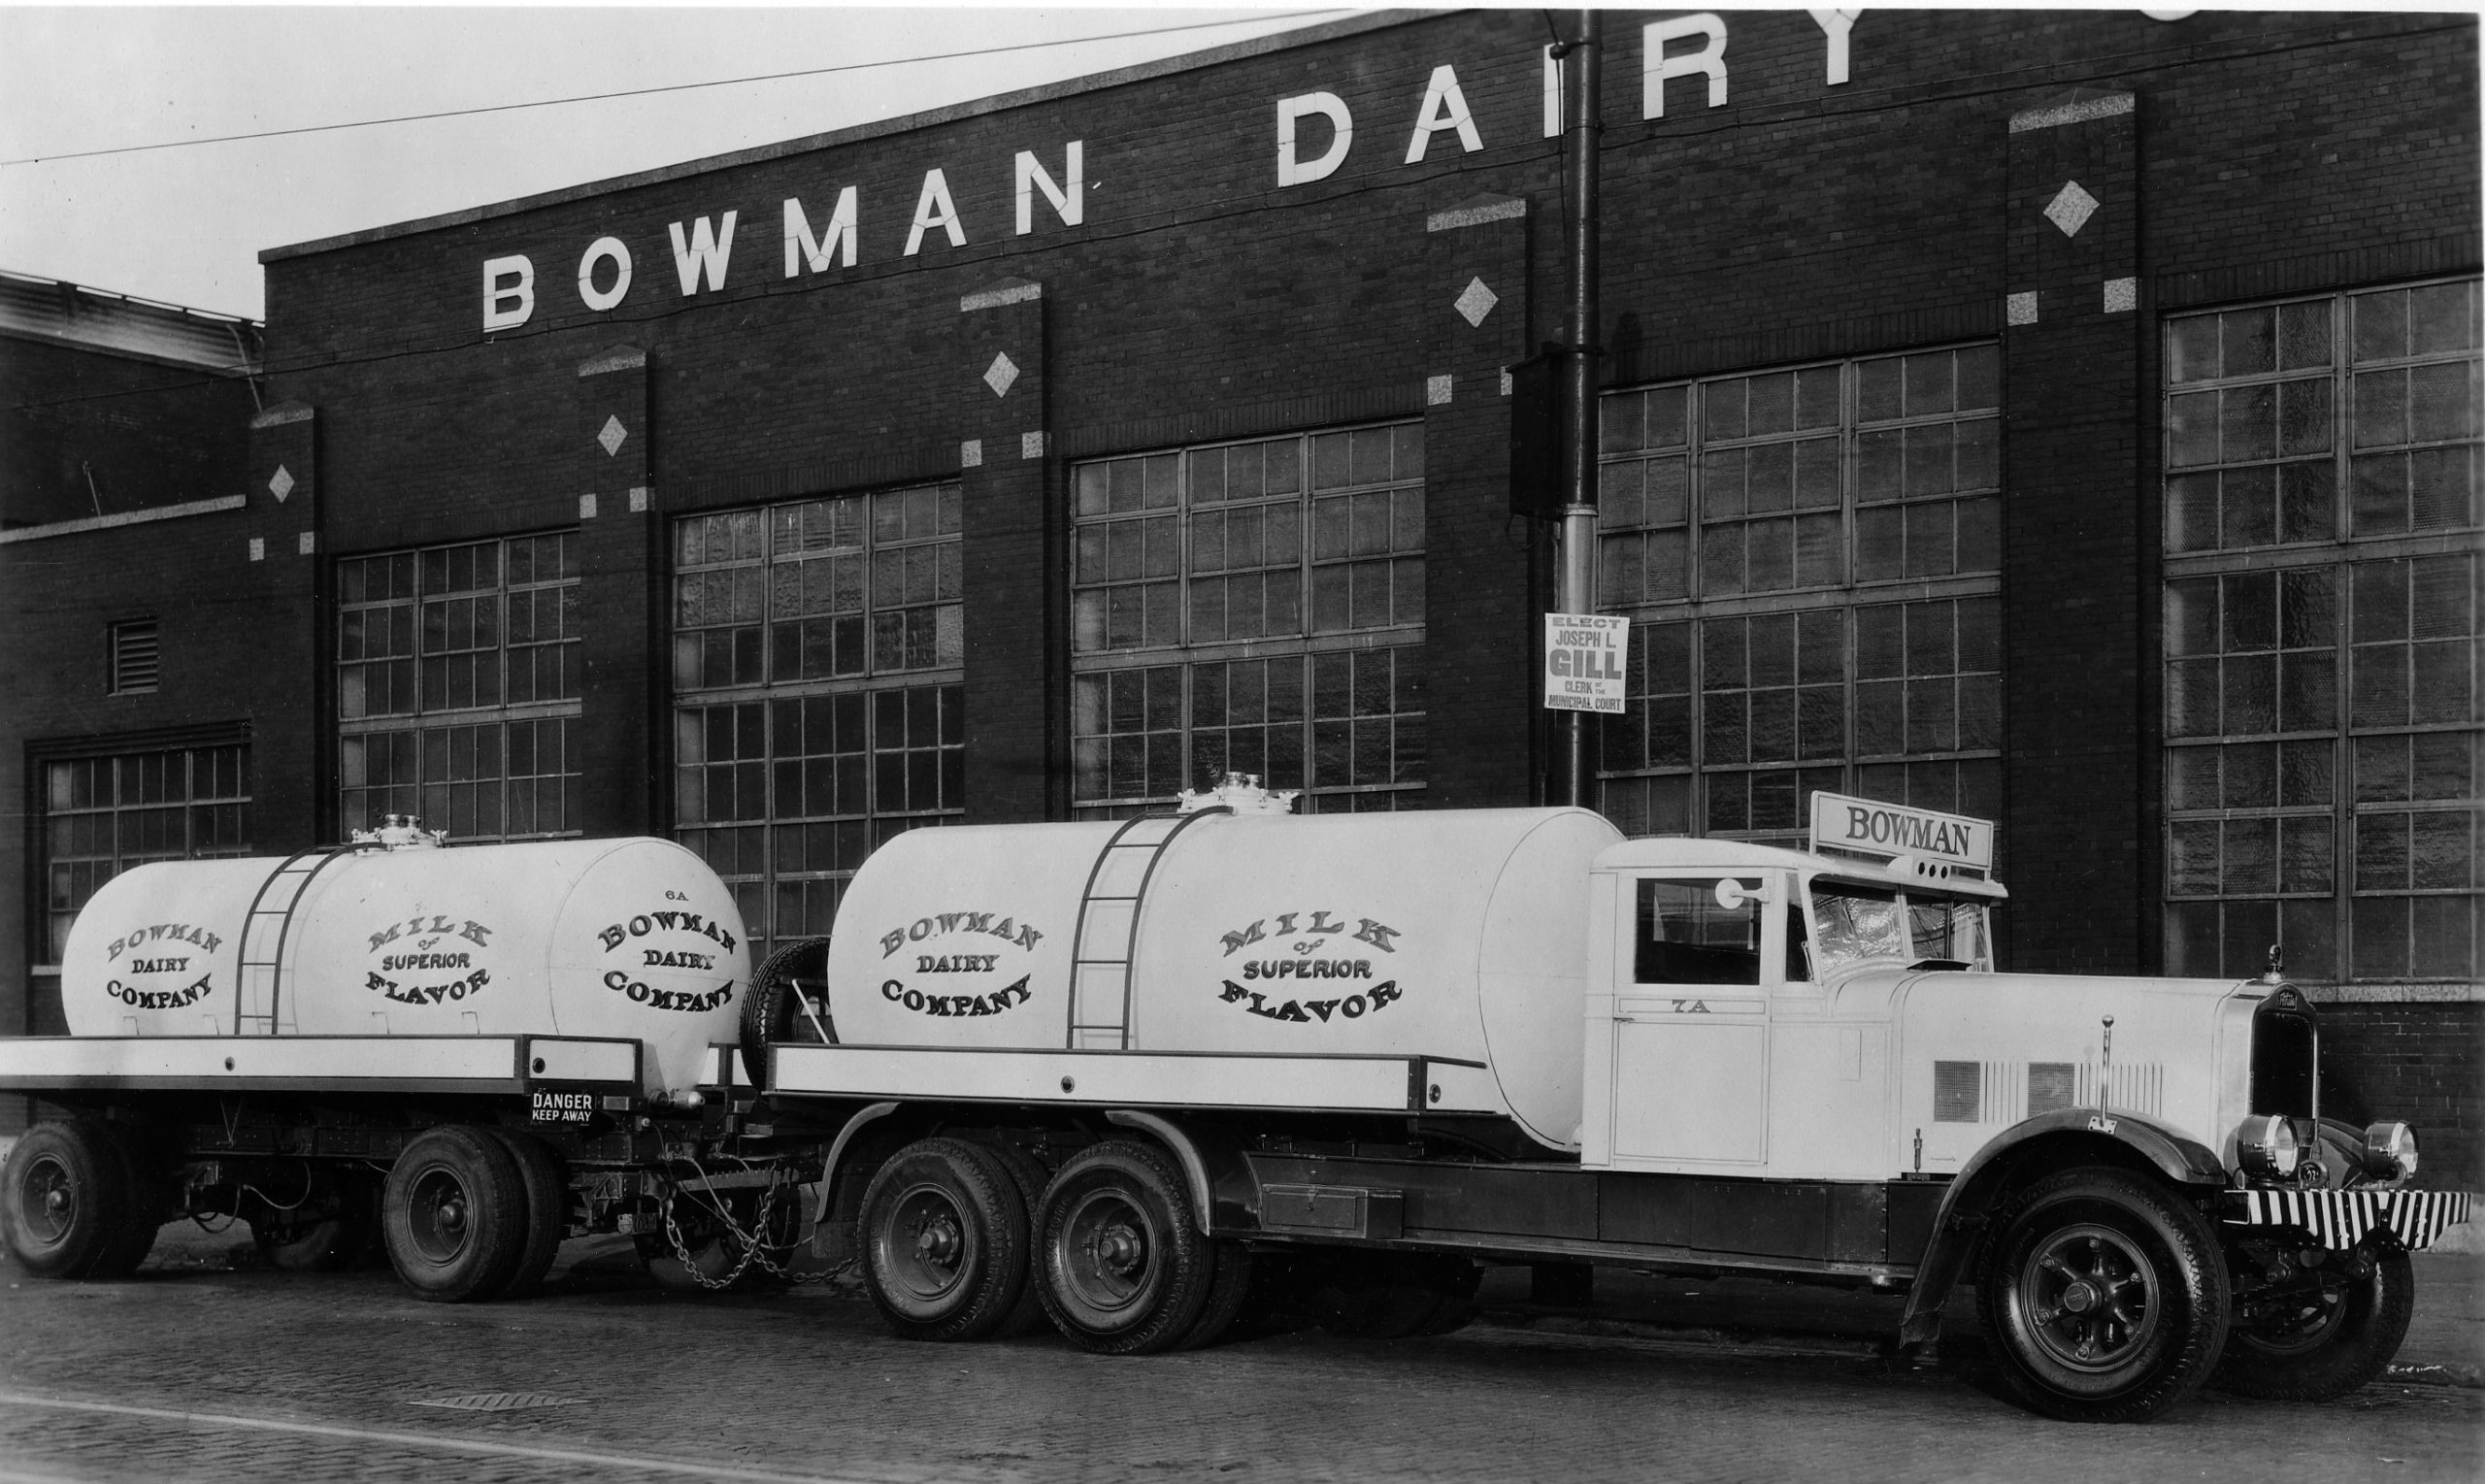 Bowman-Dairy